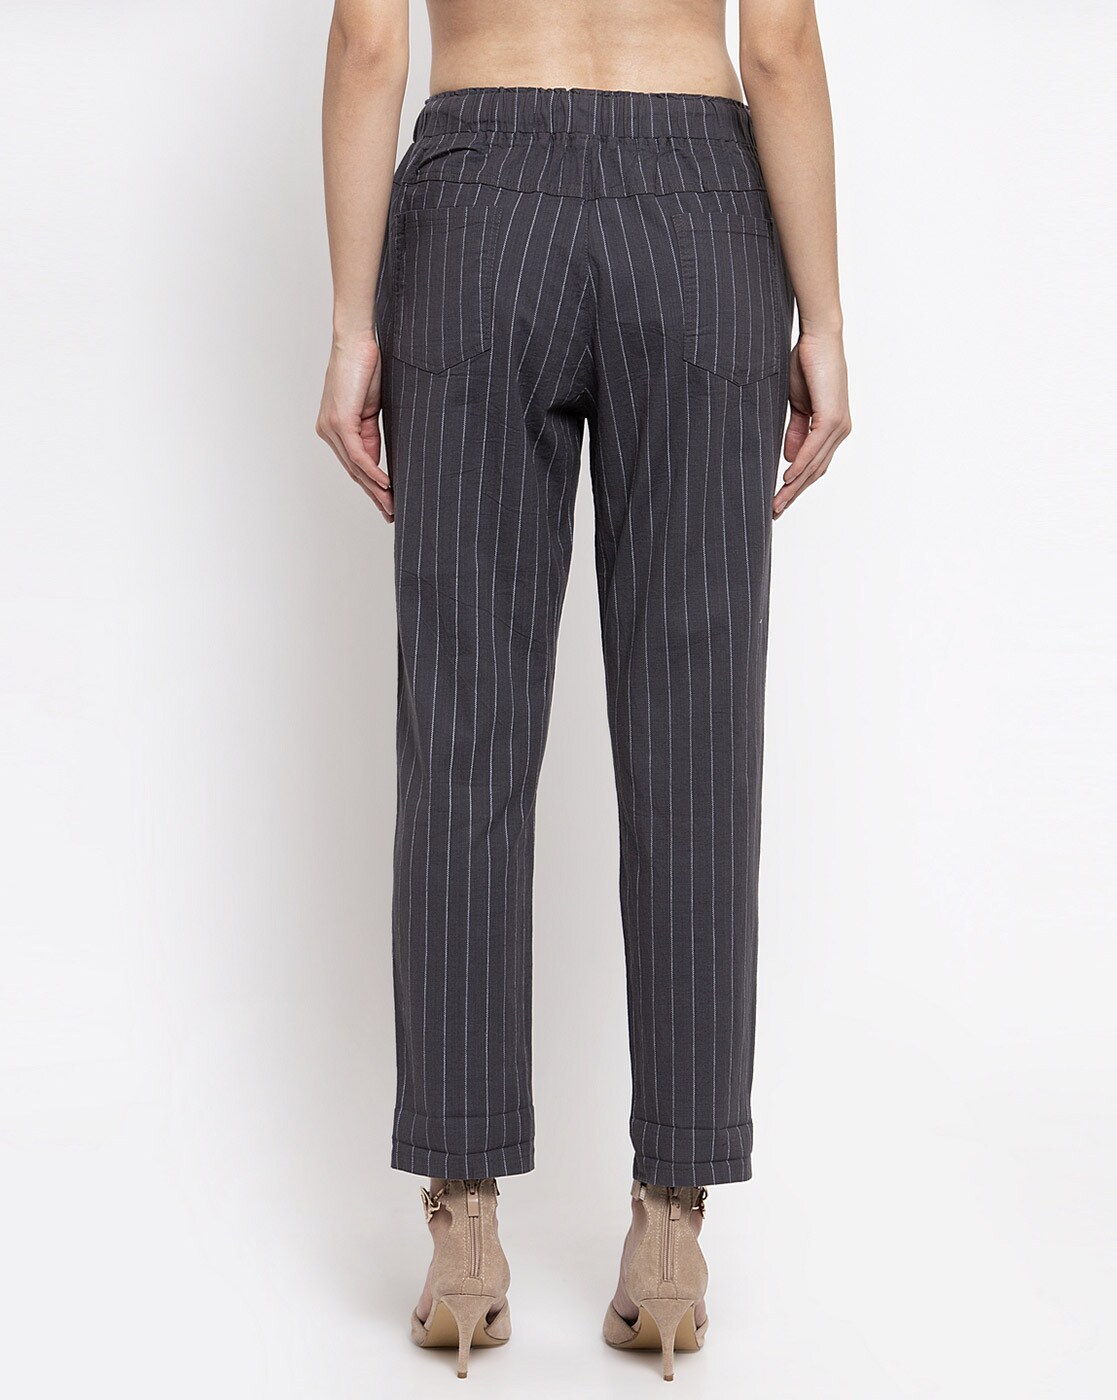 Buy Grey Trousers  Pants for Women by TALLY WEiJL Online  Ajiocom